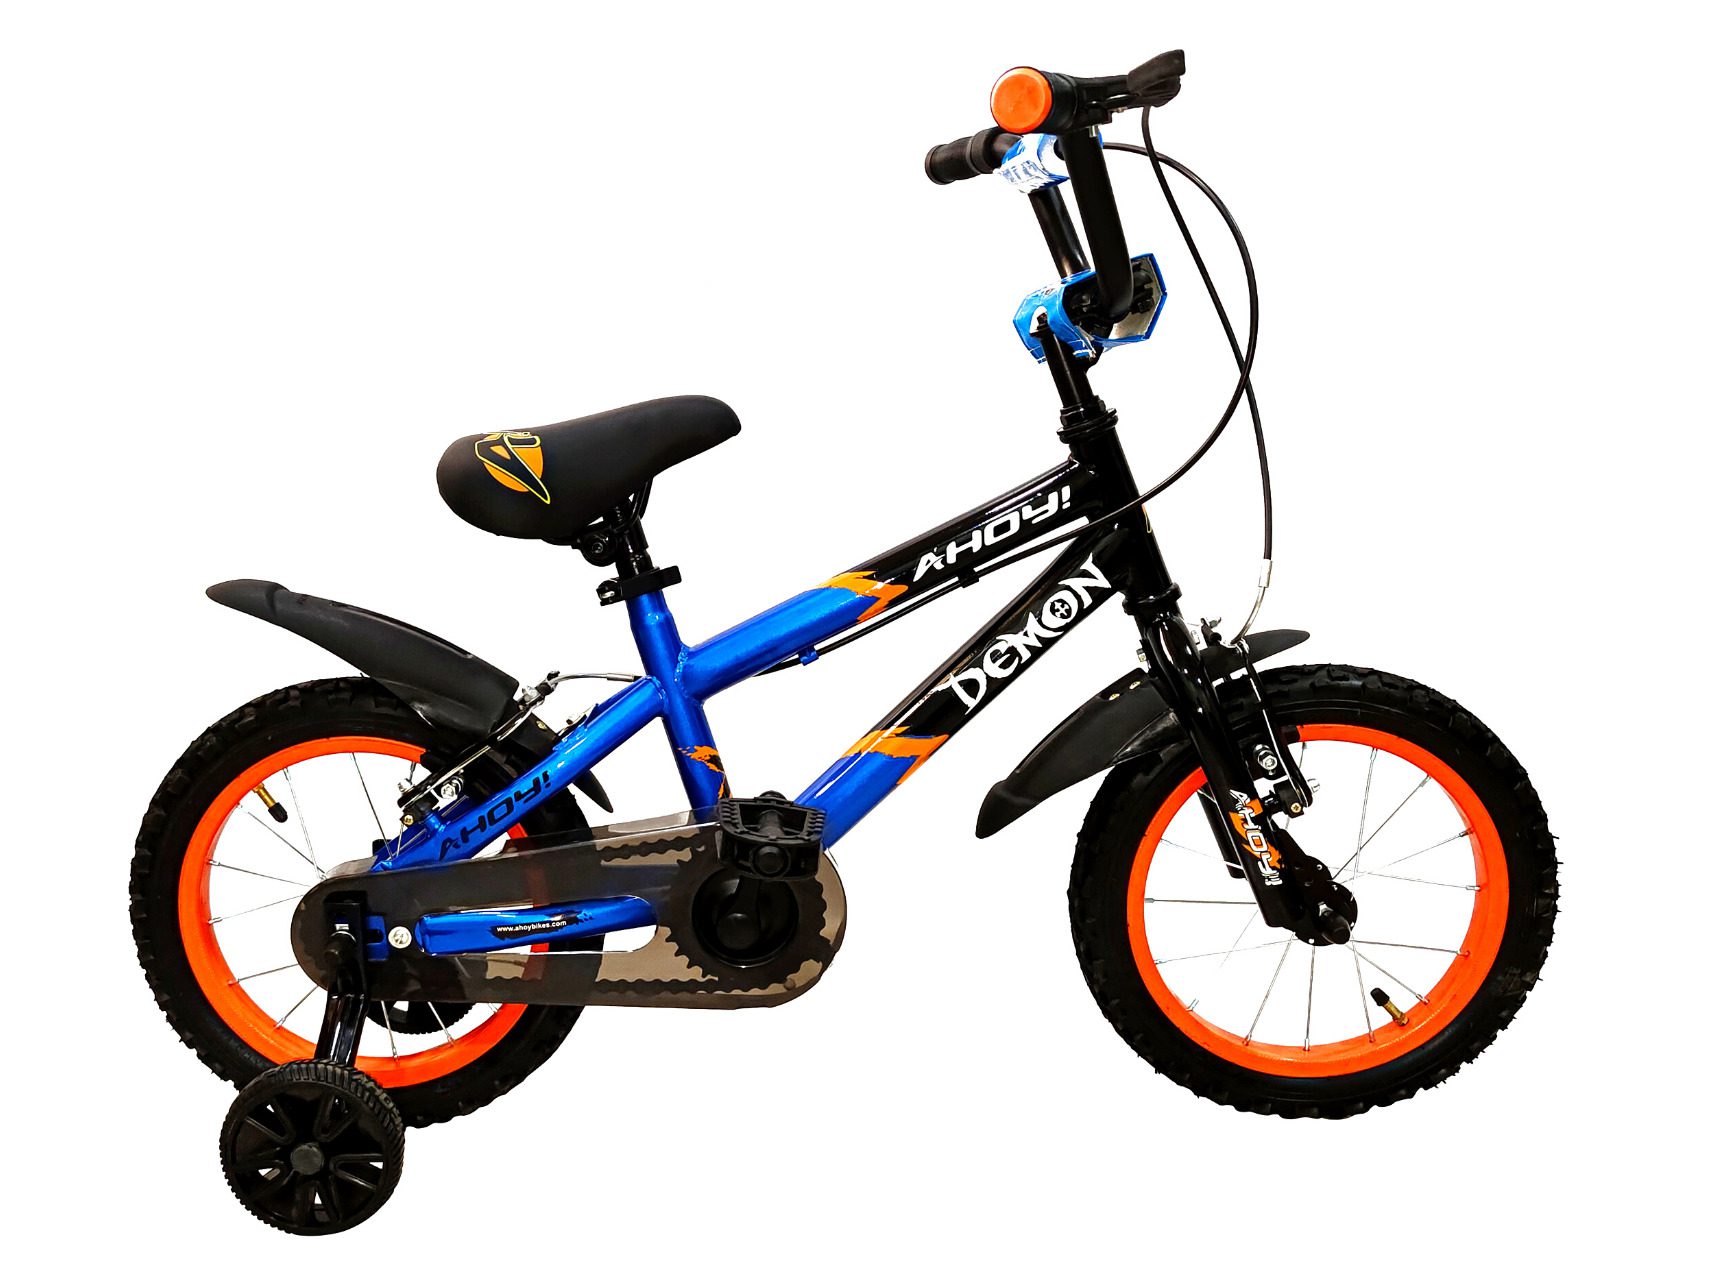 Demon kids bike single speed 14T | Buy blue bike non gear for boys